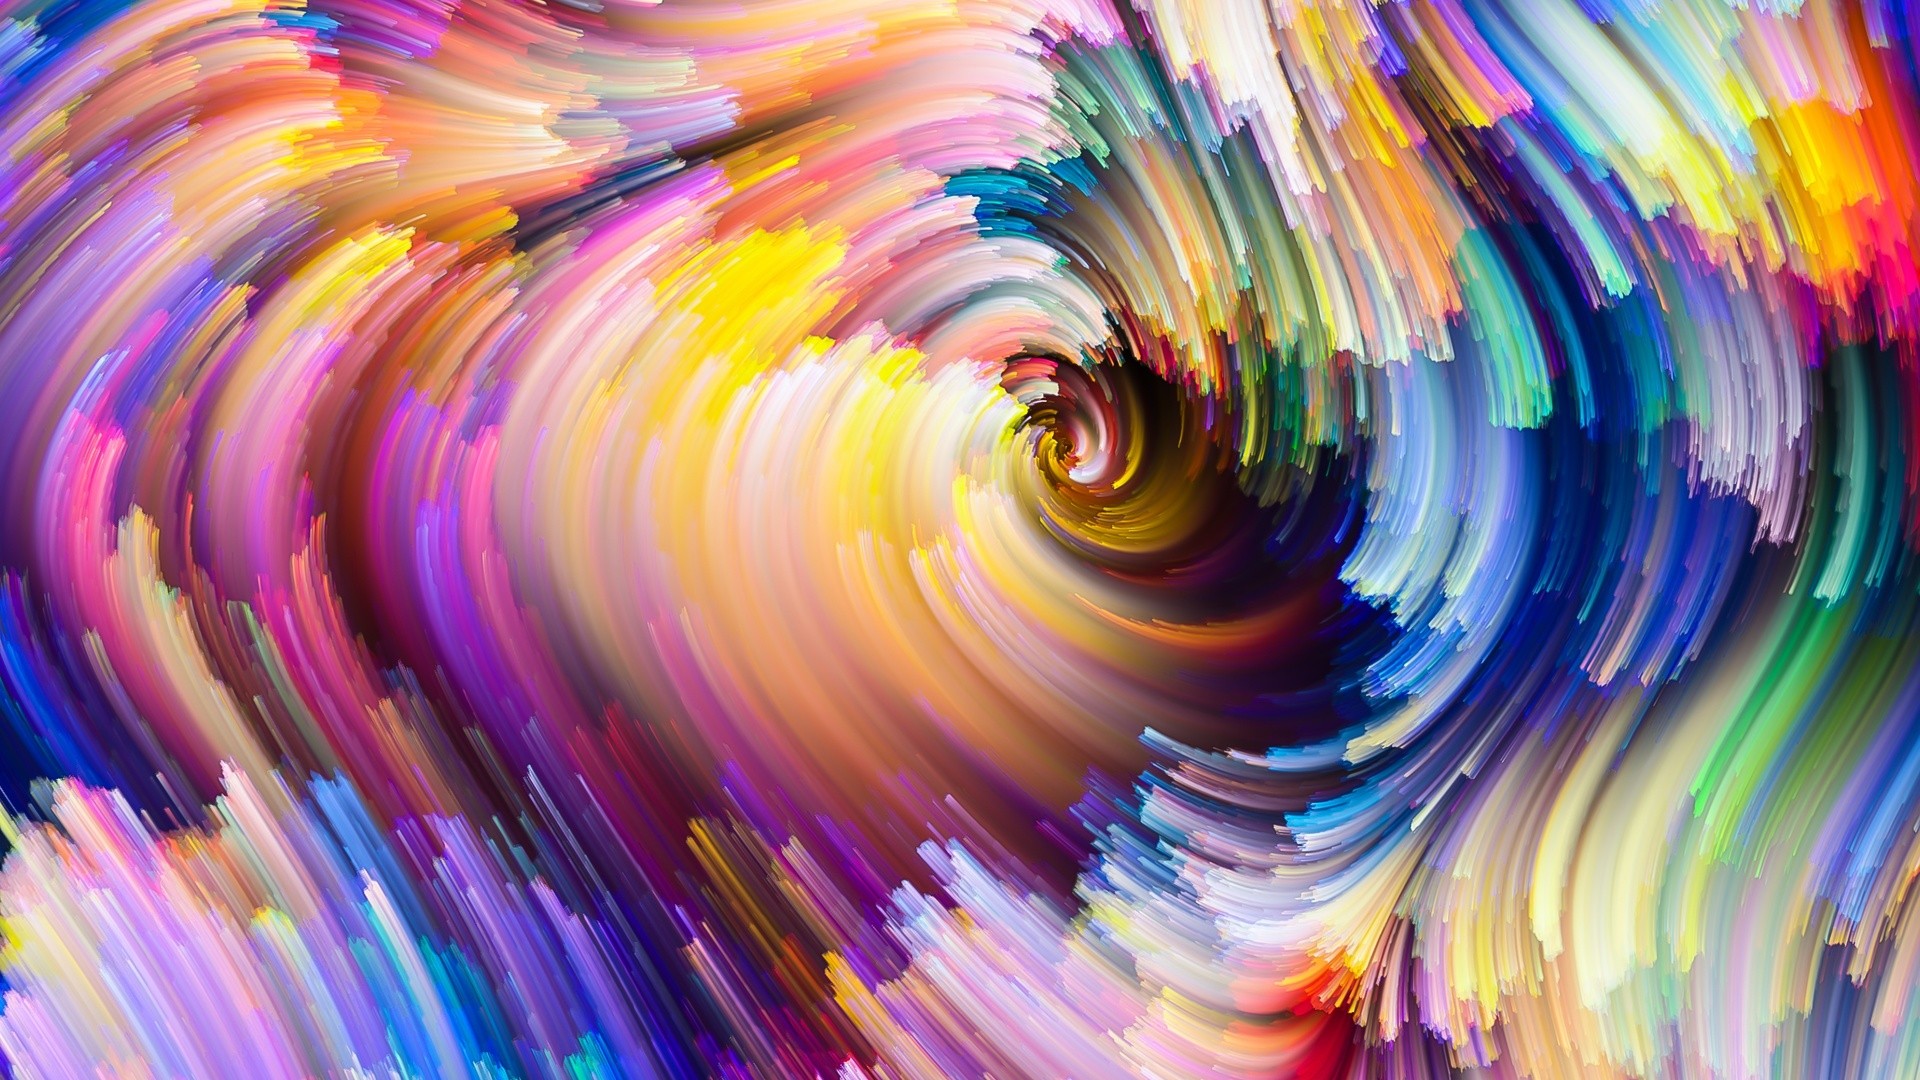 Wallpaper Colorful swirl, digital artwork